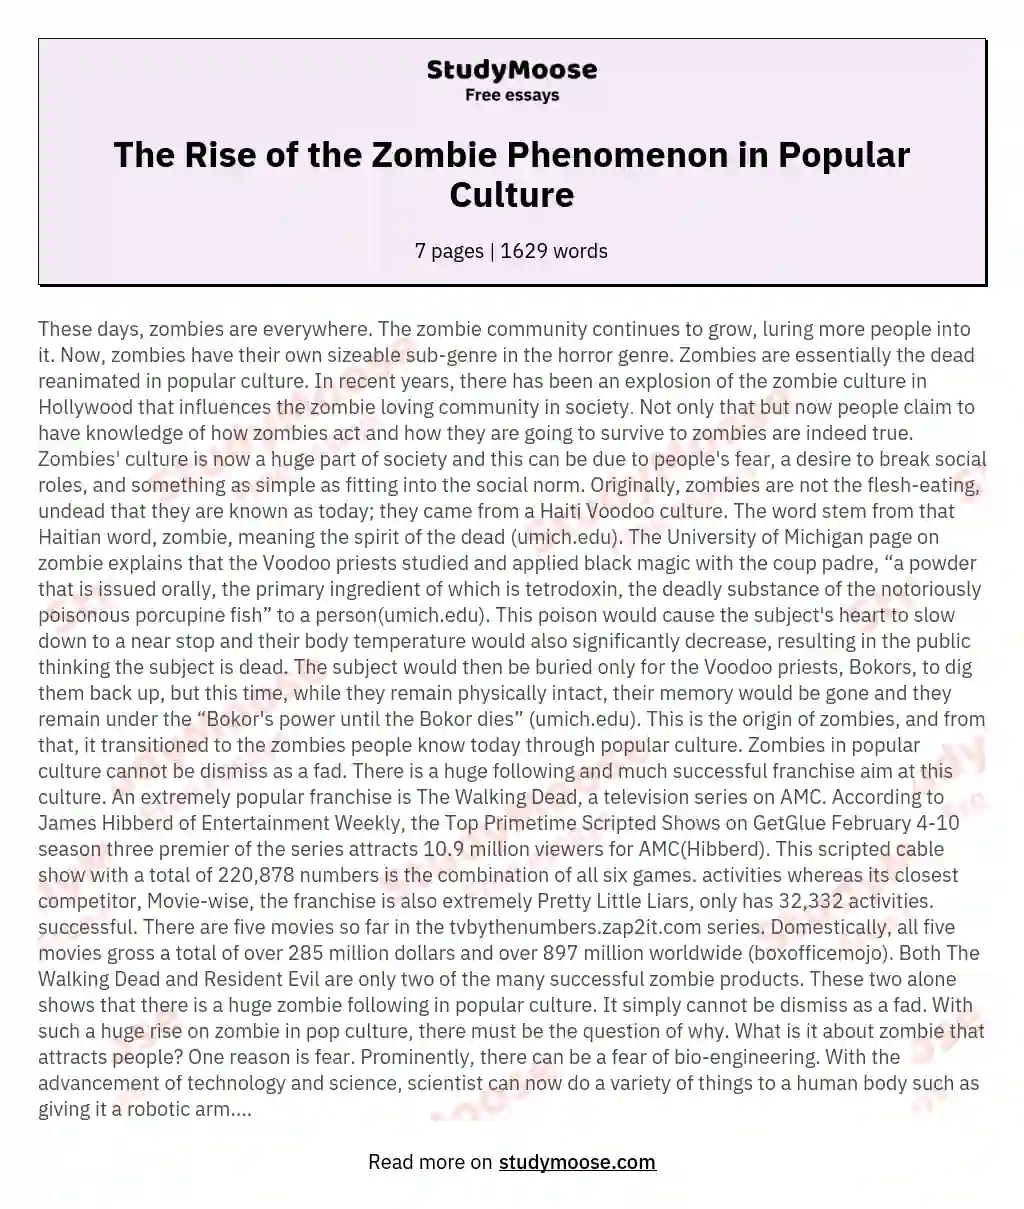 The Rise of the Zombie Phenomenon in Popular Culture essay